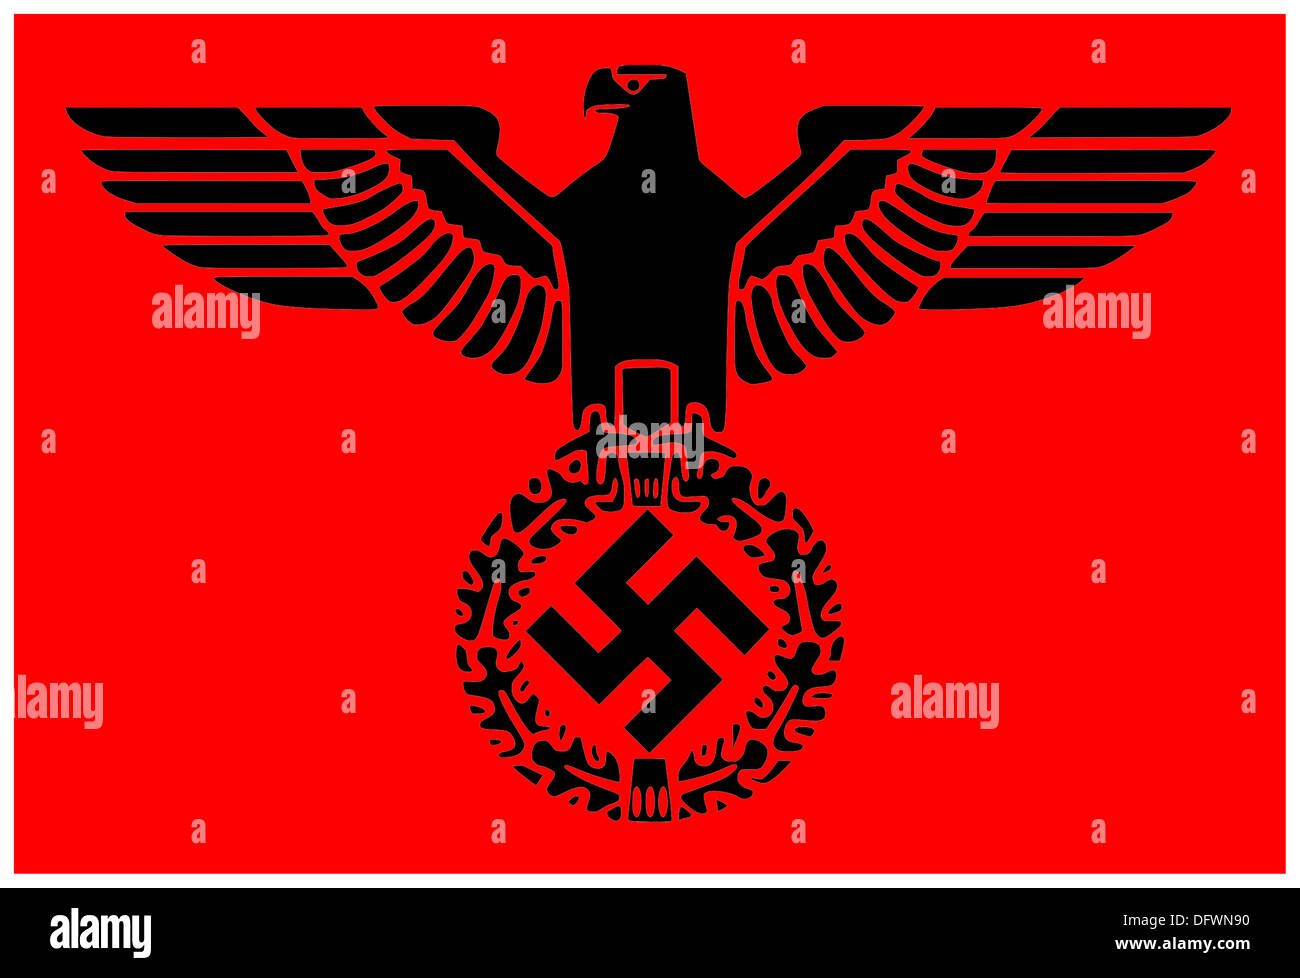 Le Parteiadler emblème croix gammée ou emblème de la Nationalsozialistische Deutsche Arbeiterpartei connu sous le nom de national-socialiste (nazi) Banque D'Images